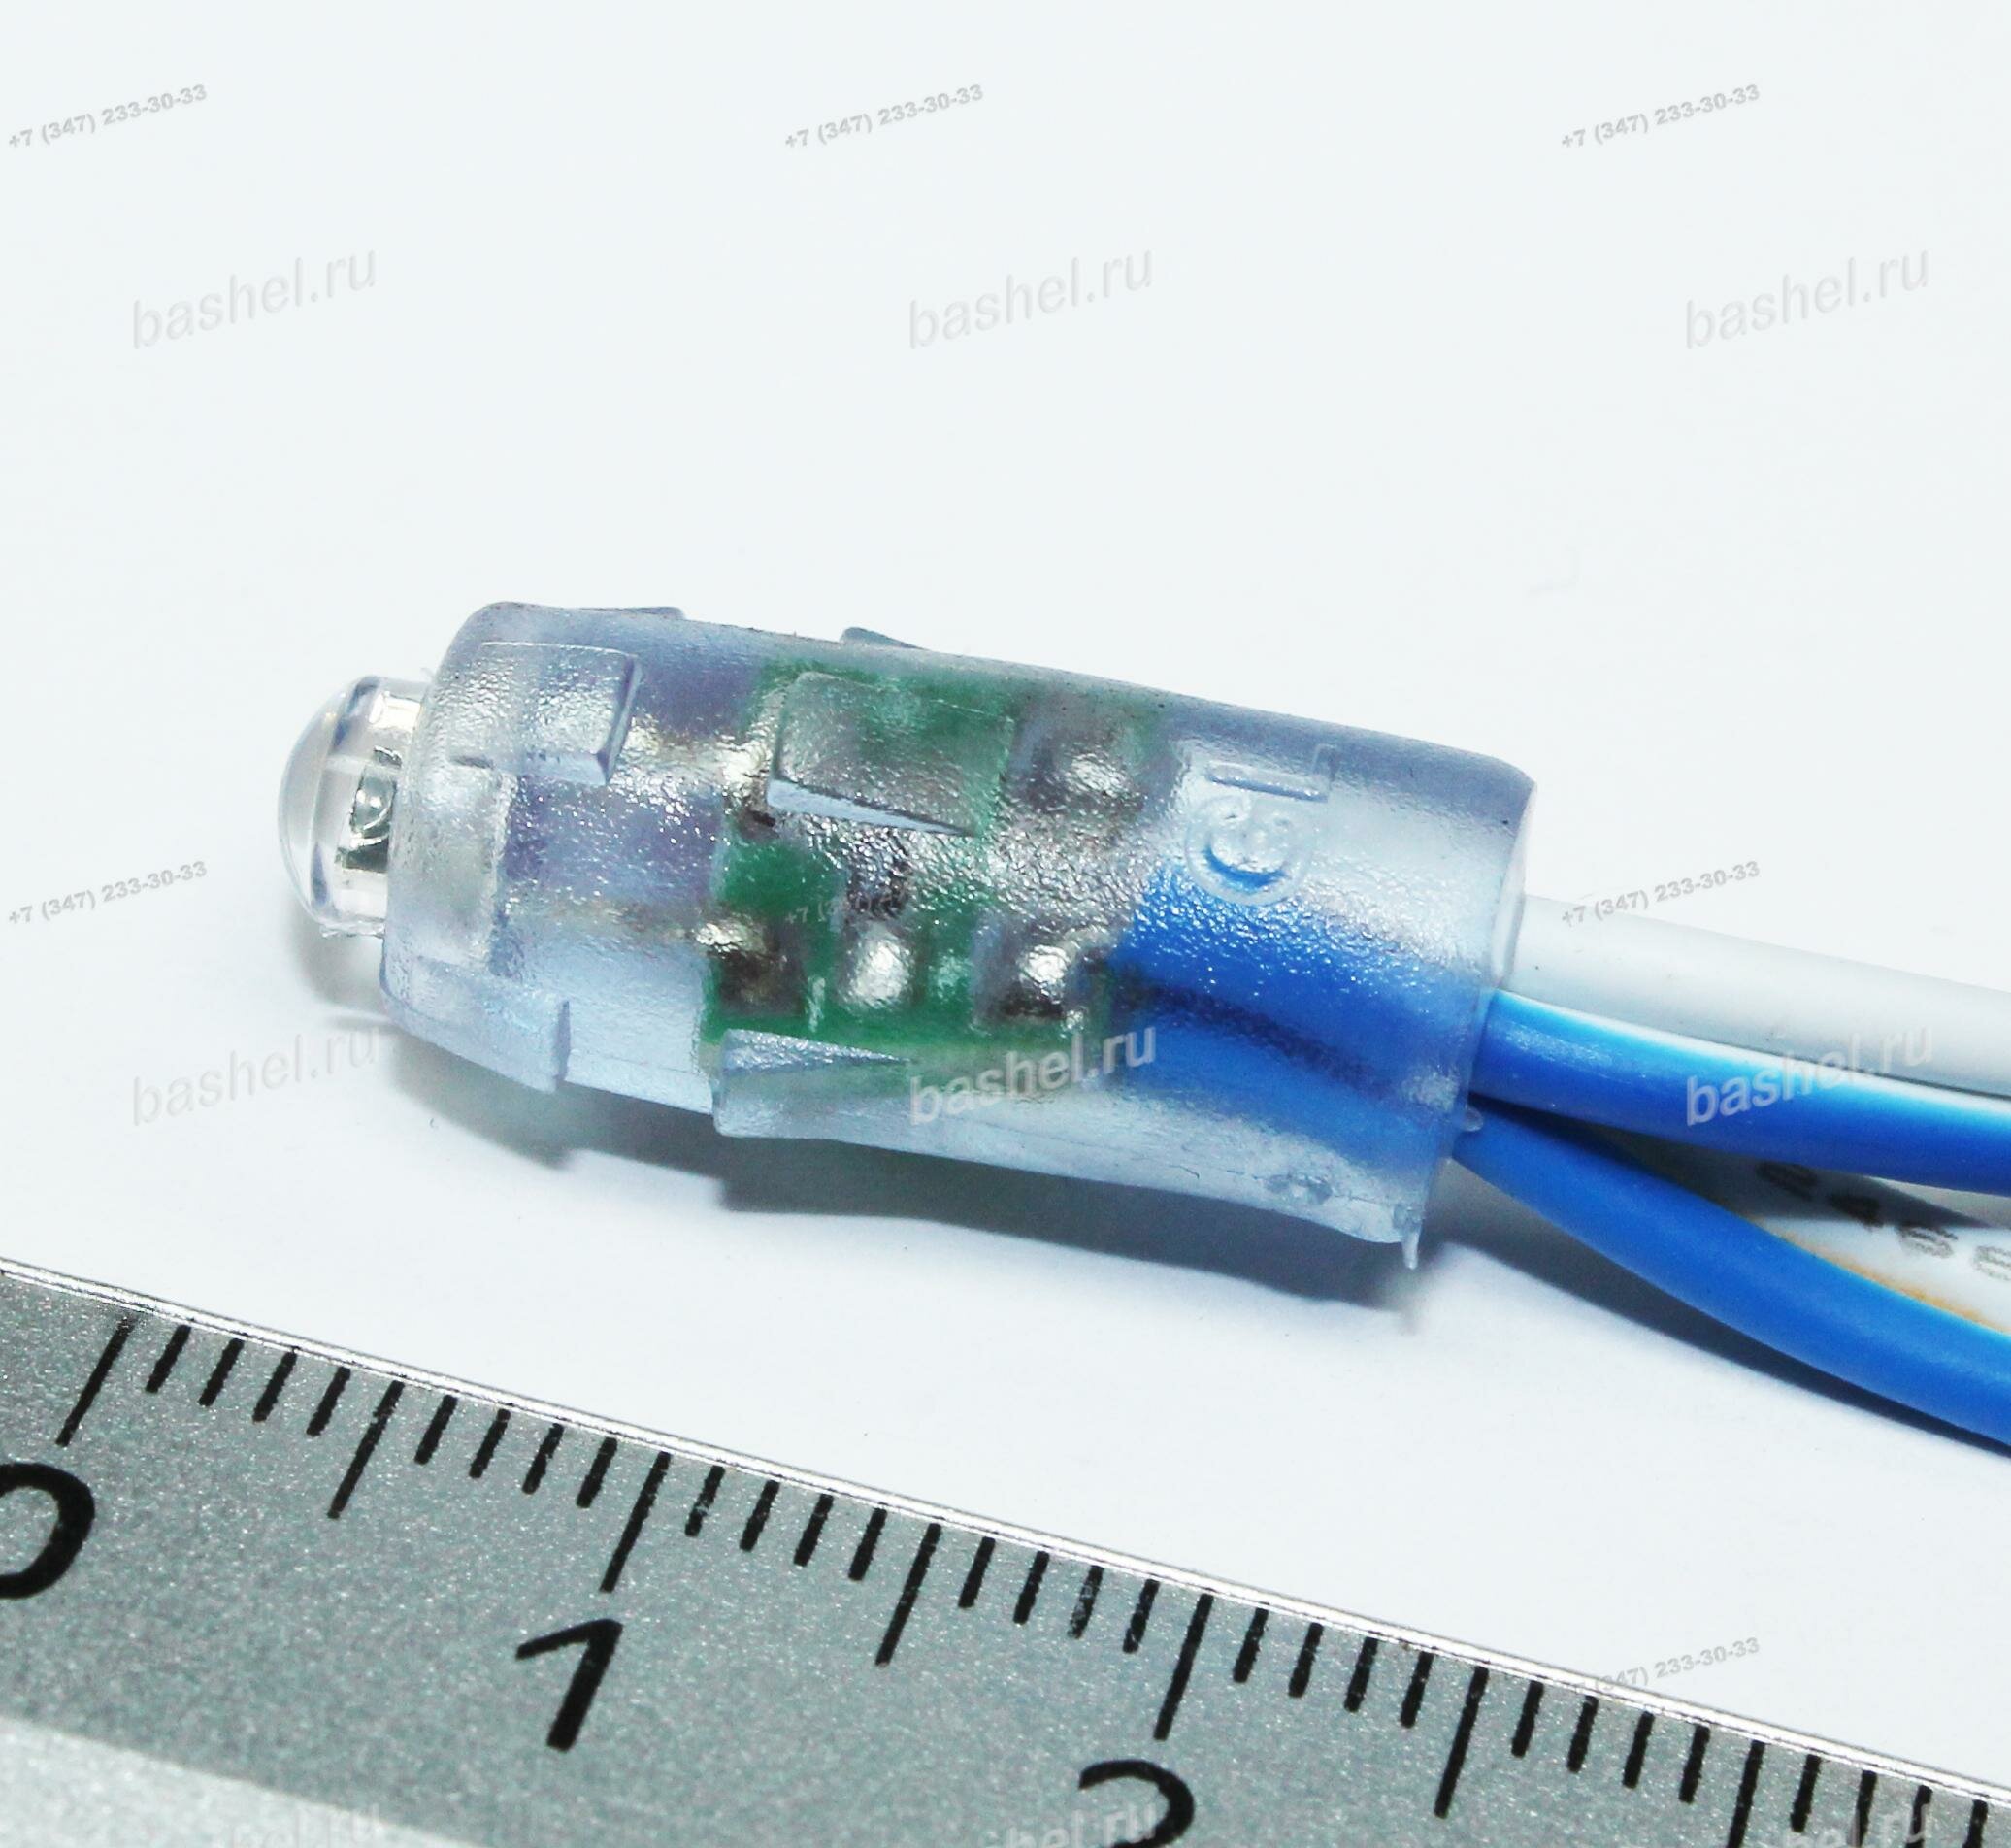 D-9mm GL-DIP5LB9 Light Blue 5V, 0.1W, IP67 (группового контроля), Модуль светодиодный пиксельный, Geniled электротовар